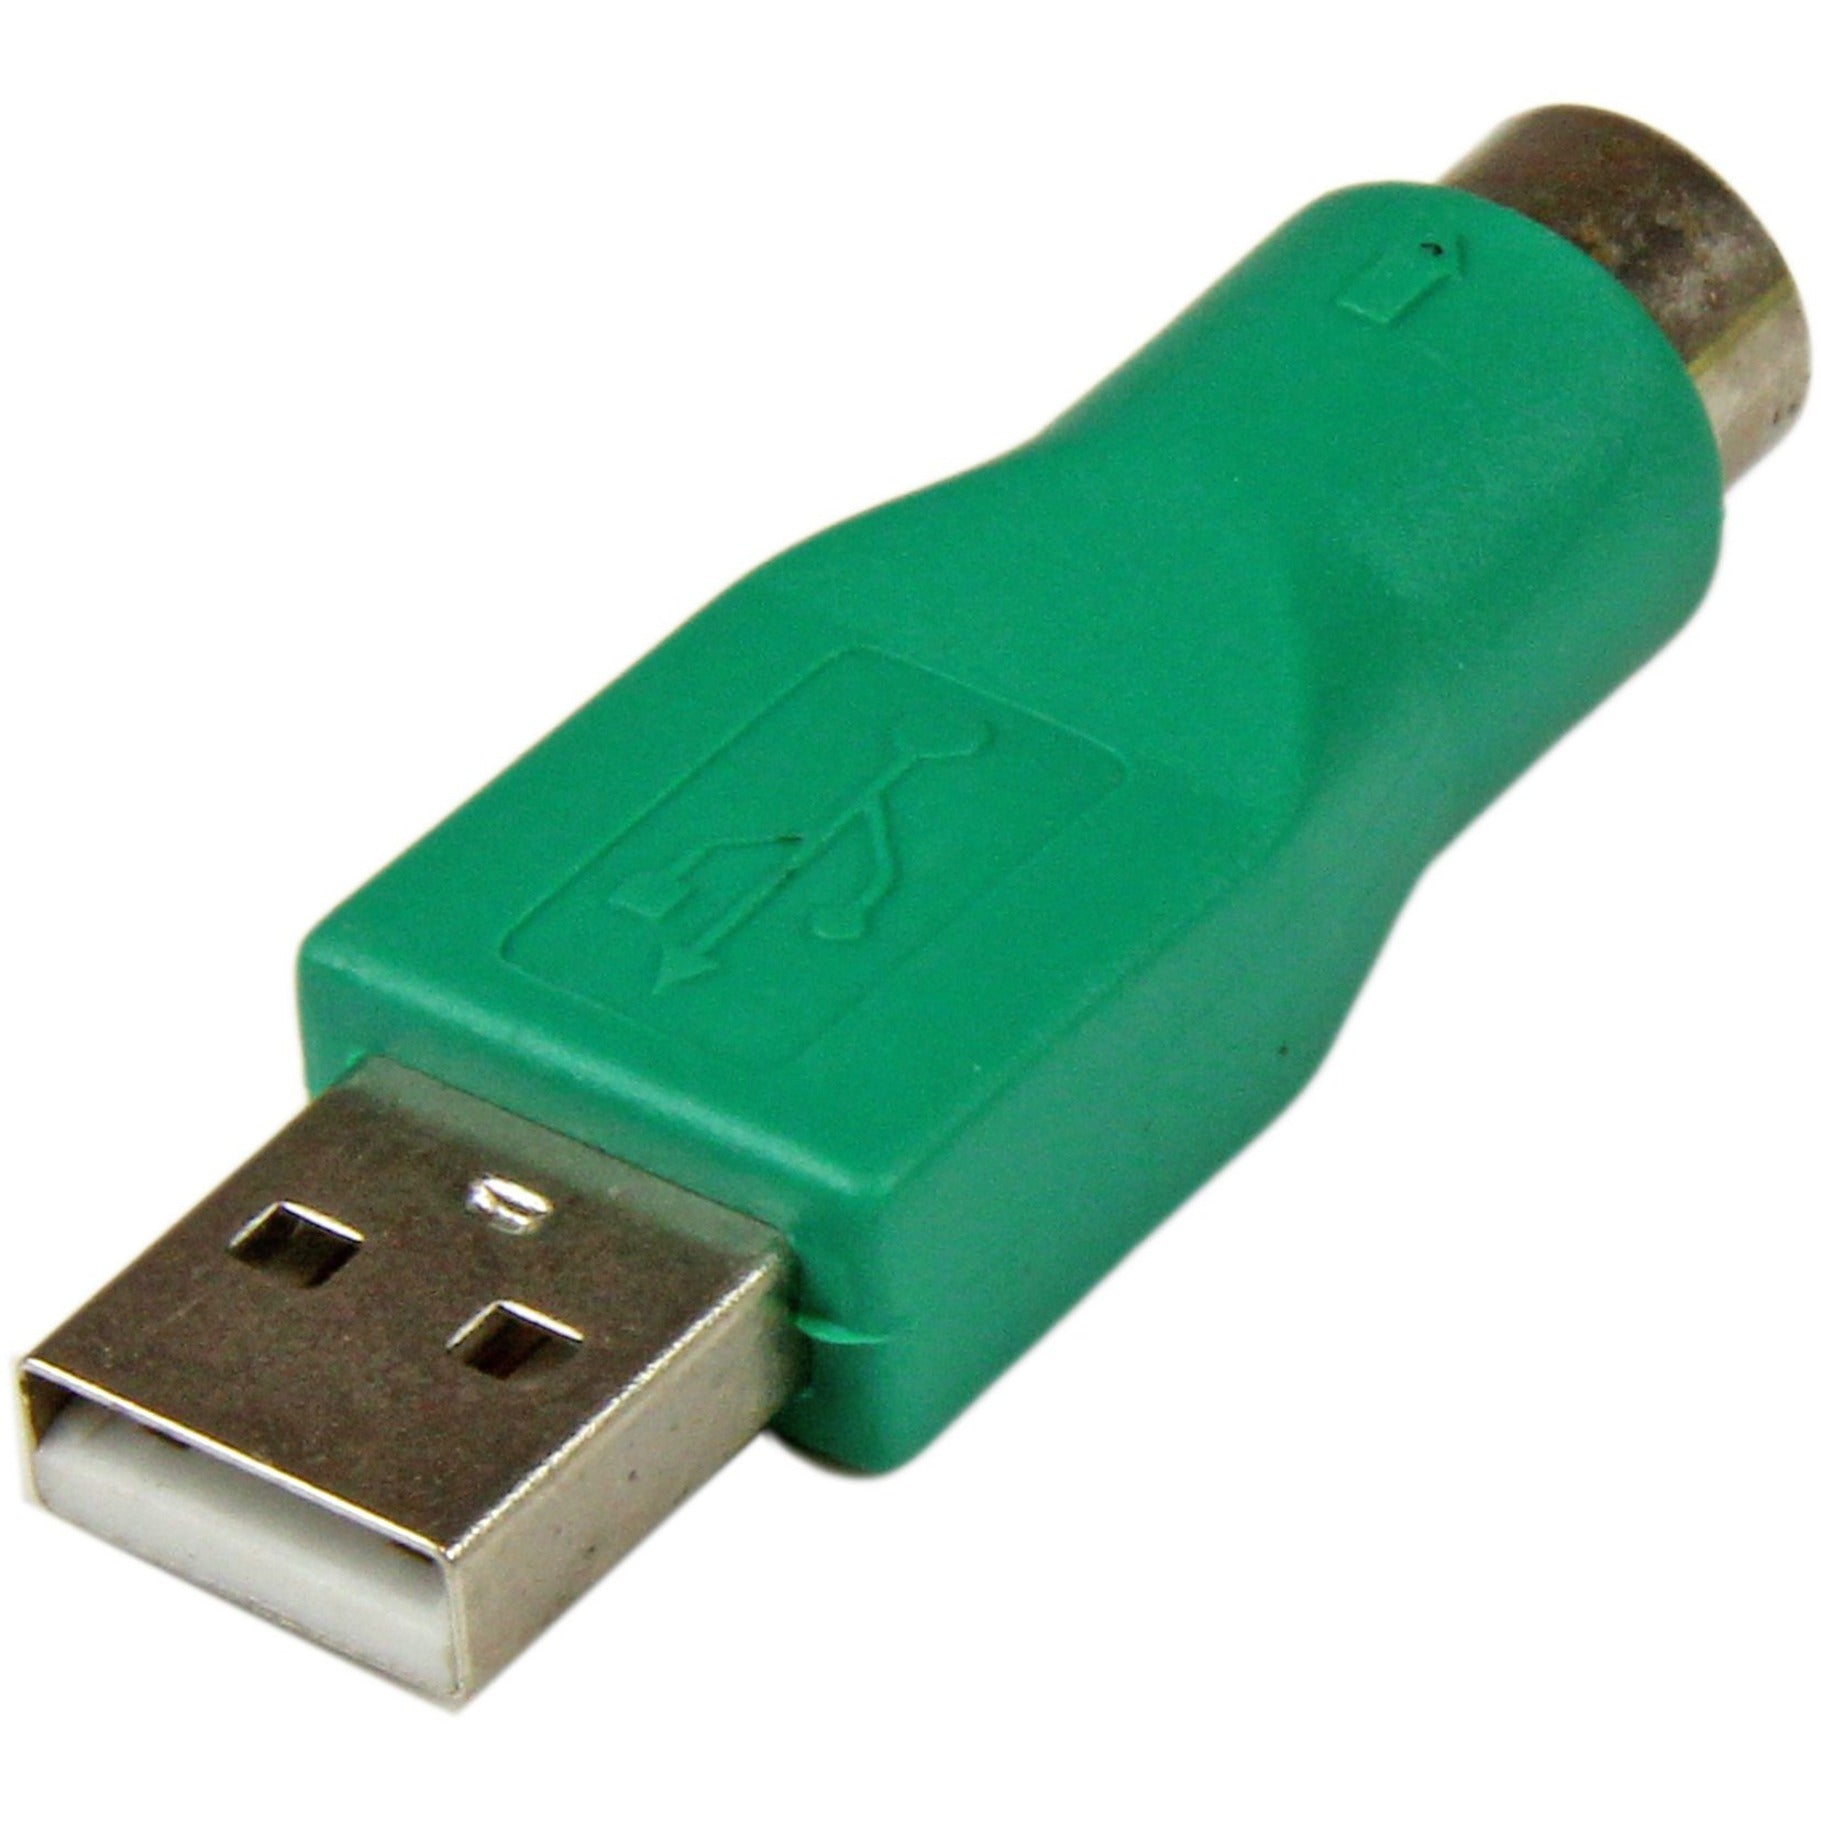 ستارتك.كوم GC46MF PS/2 فأرة إلى USB محول - F / M، واجهة سهلة التوصيل وتشغيل الفأرة التوصيل